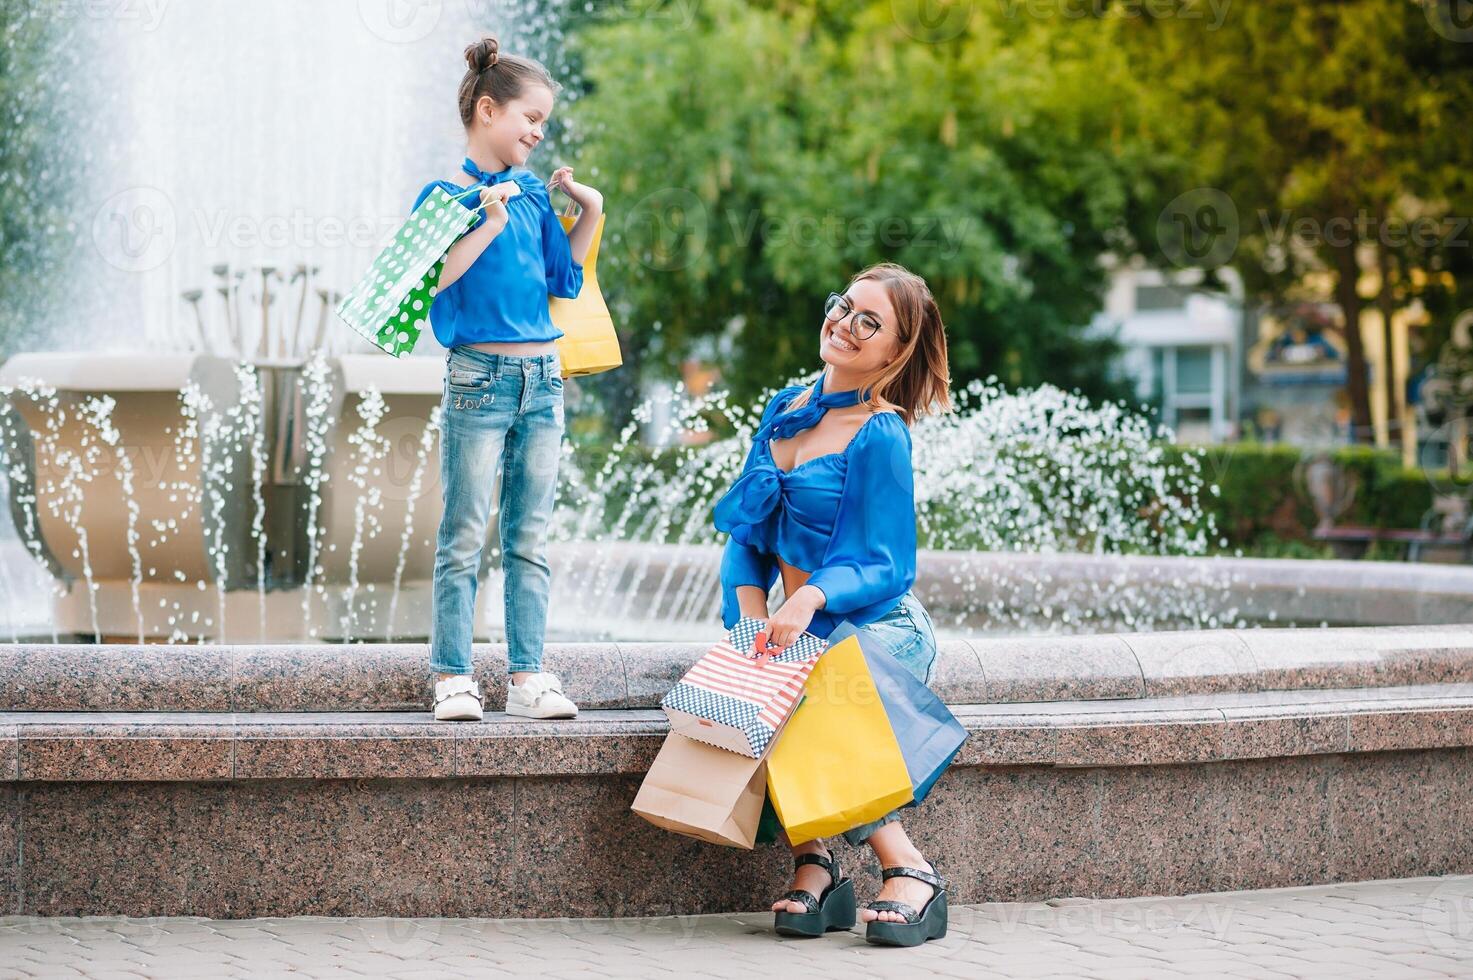 oferta, consumismo e pessoas conceito - feliz jovem mulheres dela Dauther com compras bolsas caminhando cidade rua foto